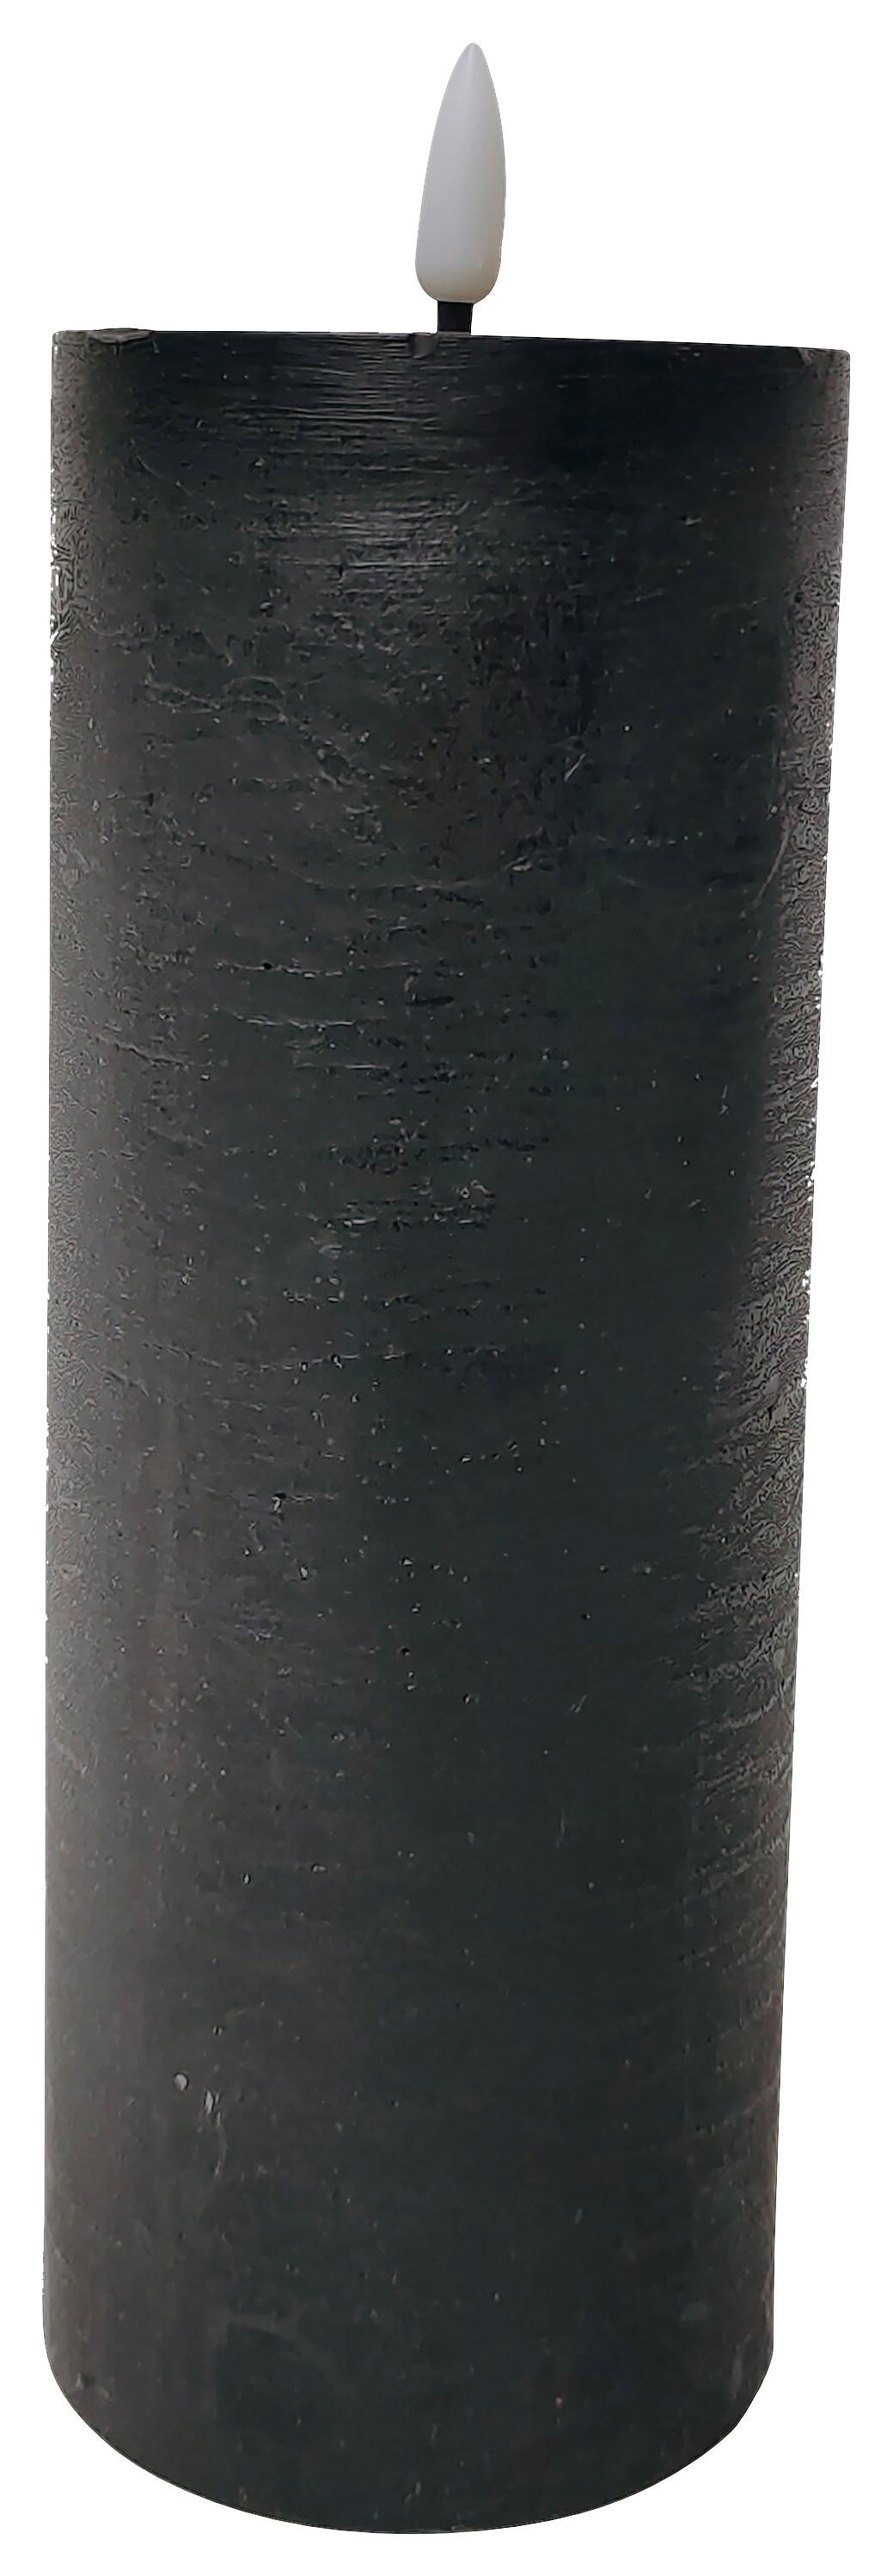 Svíčka S Led Mandy, V: 20cm - černá, plast/přírodní materiály (7,5/17,5cm) - Premium Living